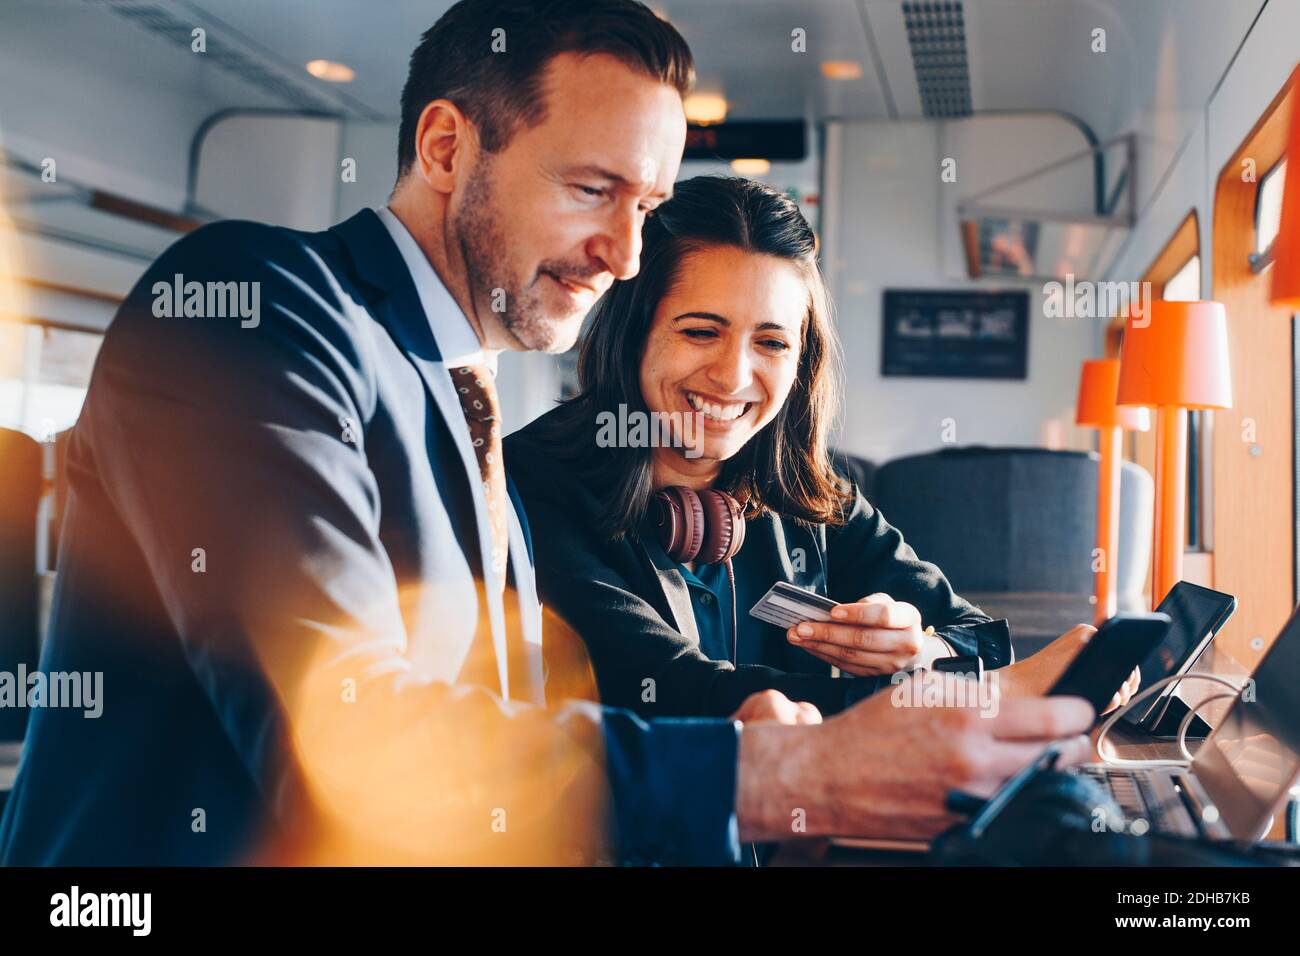 Glückliche Geschäftsfrau mit Kreditkarte, während Geschäftsmann mit Handy In der Flughafenlobby Stockfoto